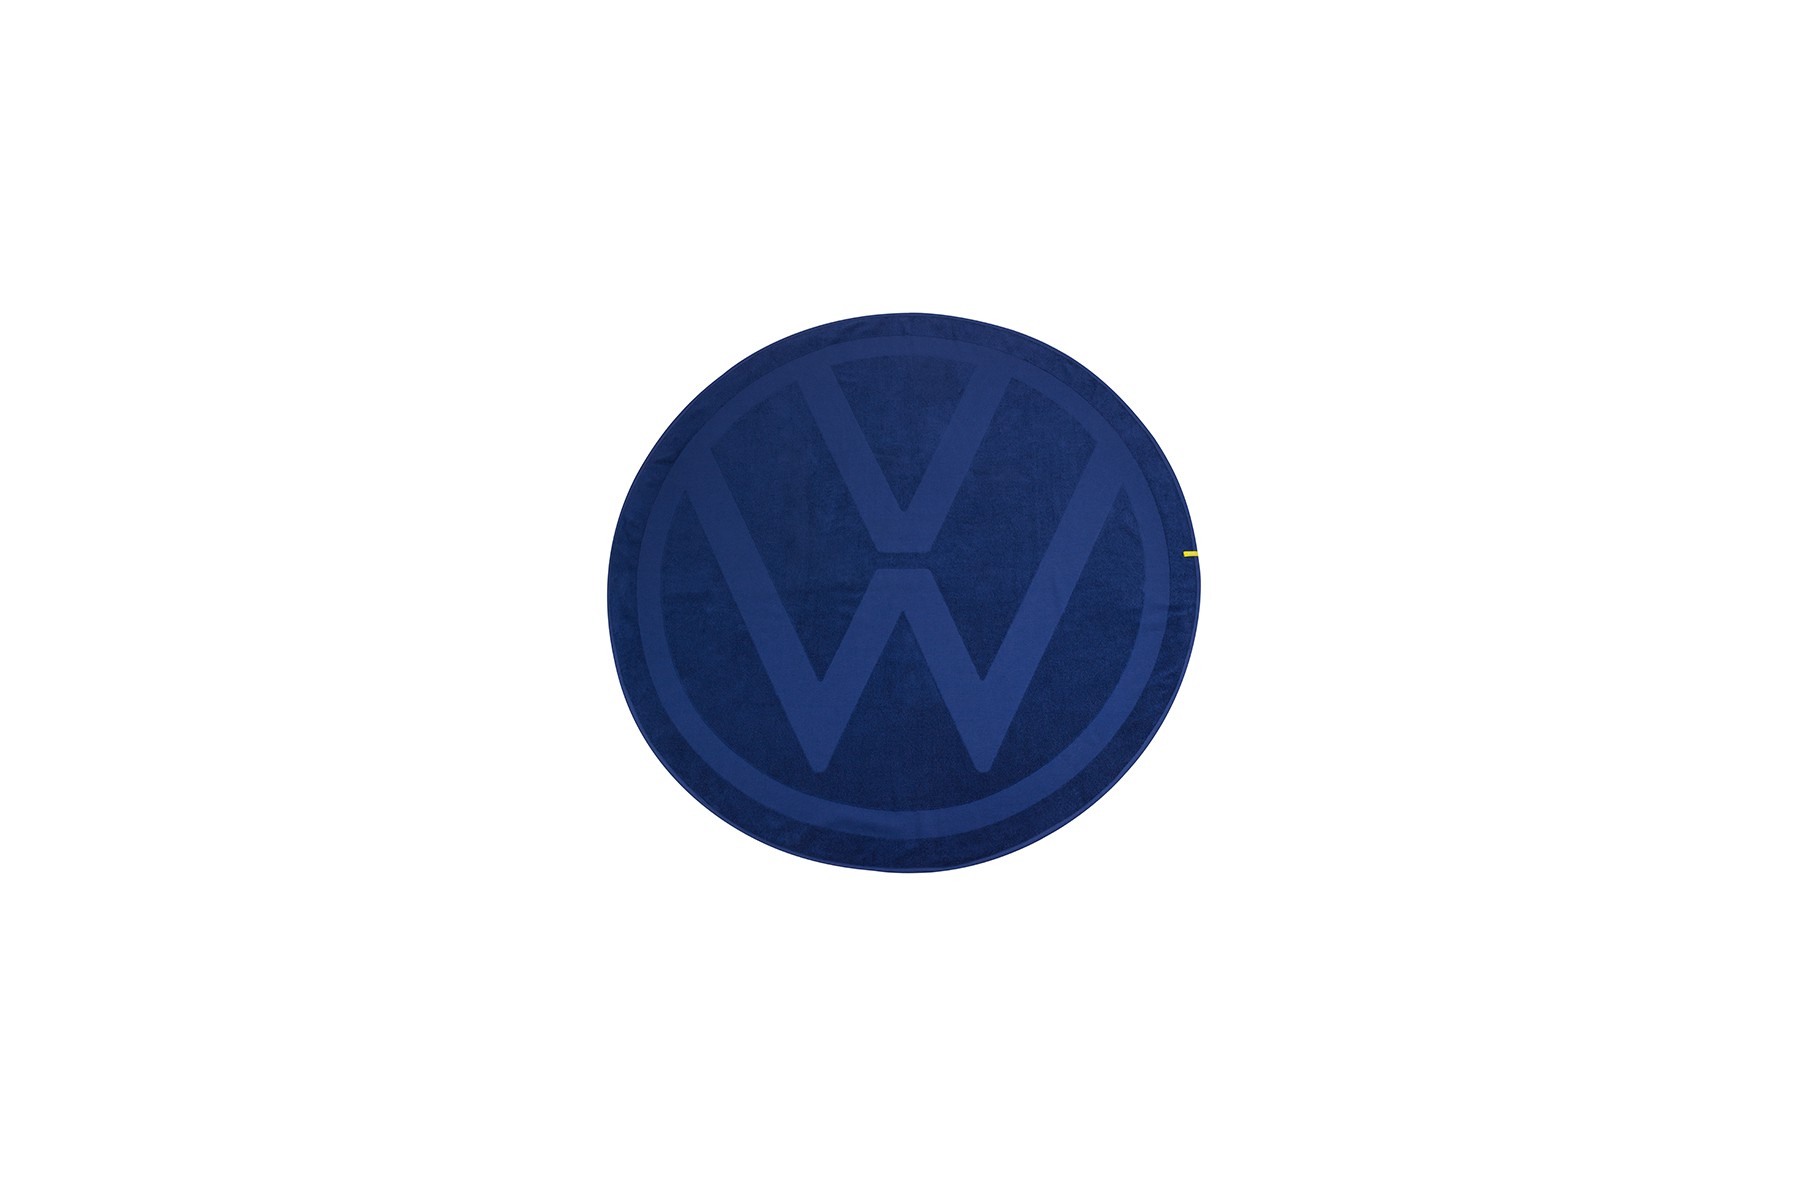 Ręcznik logo Volkswagen, granatowy okrągly